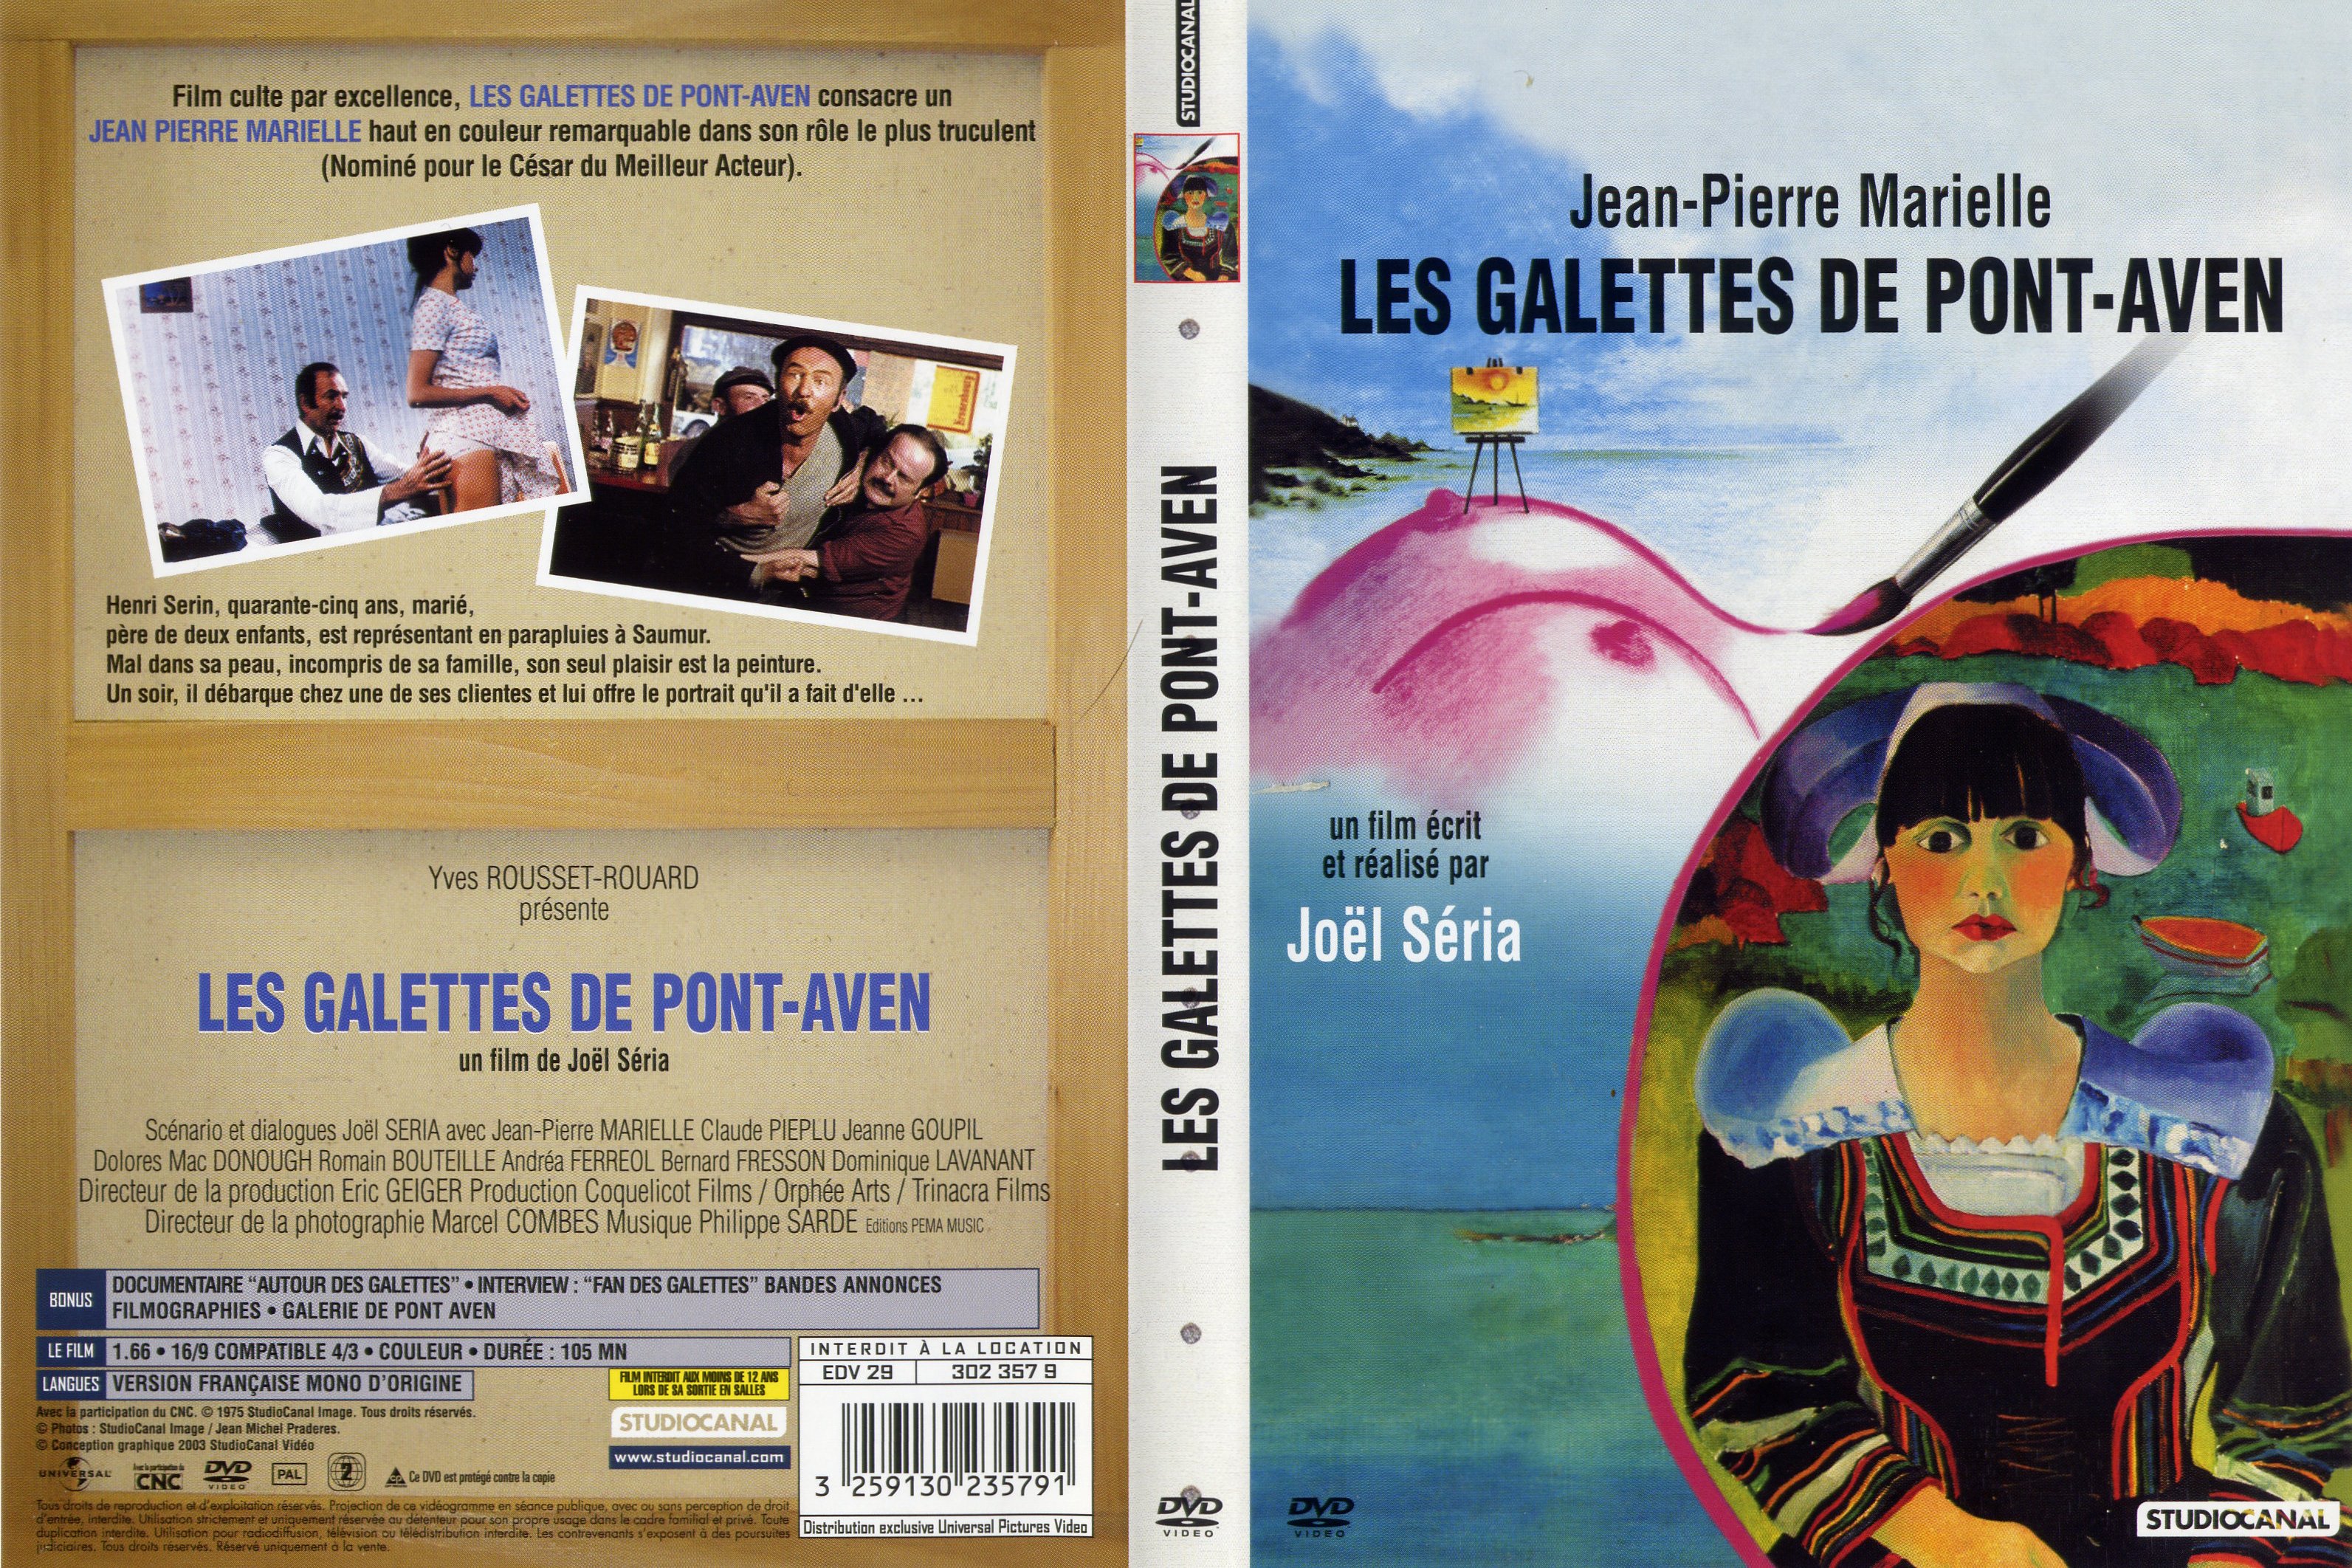 Jaquette DVD Les galettes de Pont-Aven v3